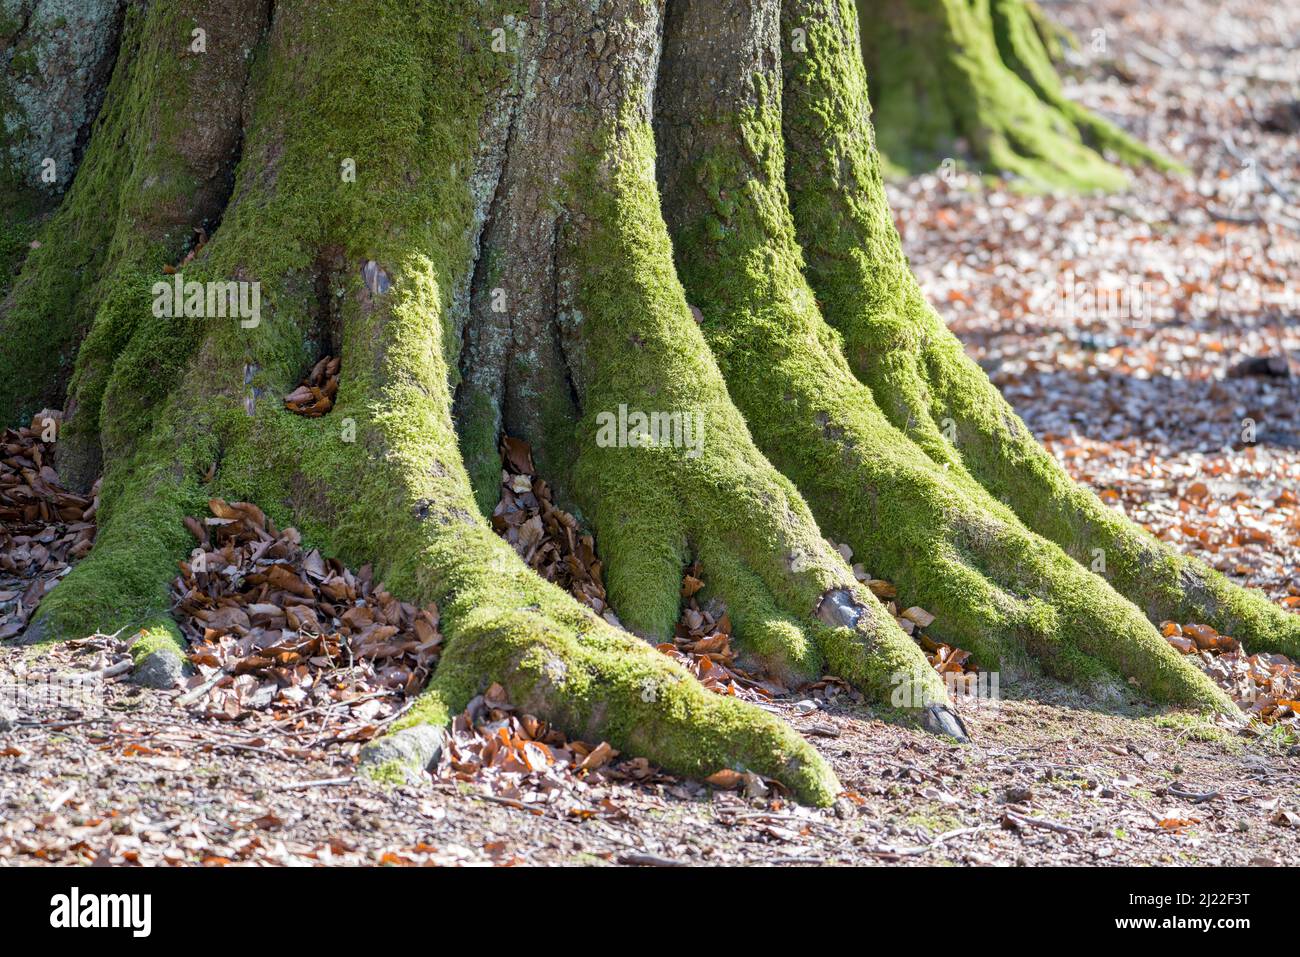 Detalles, bosque primitivo Urwald Sababurg, Hofgeismar, Weser Uplands, Weserbergland, Hesse, Alemania Foto de stock